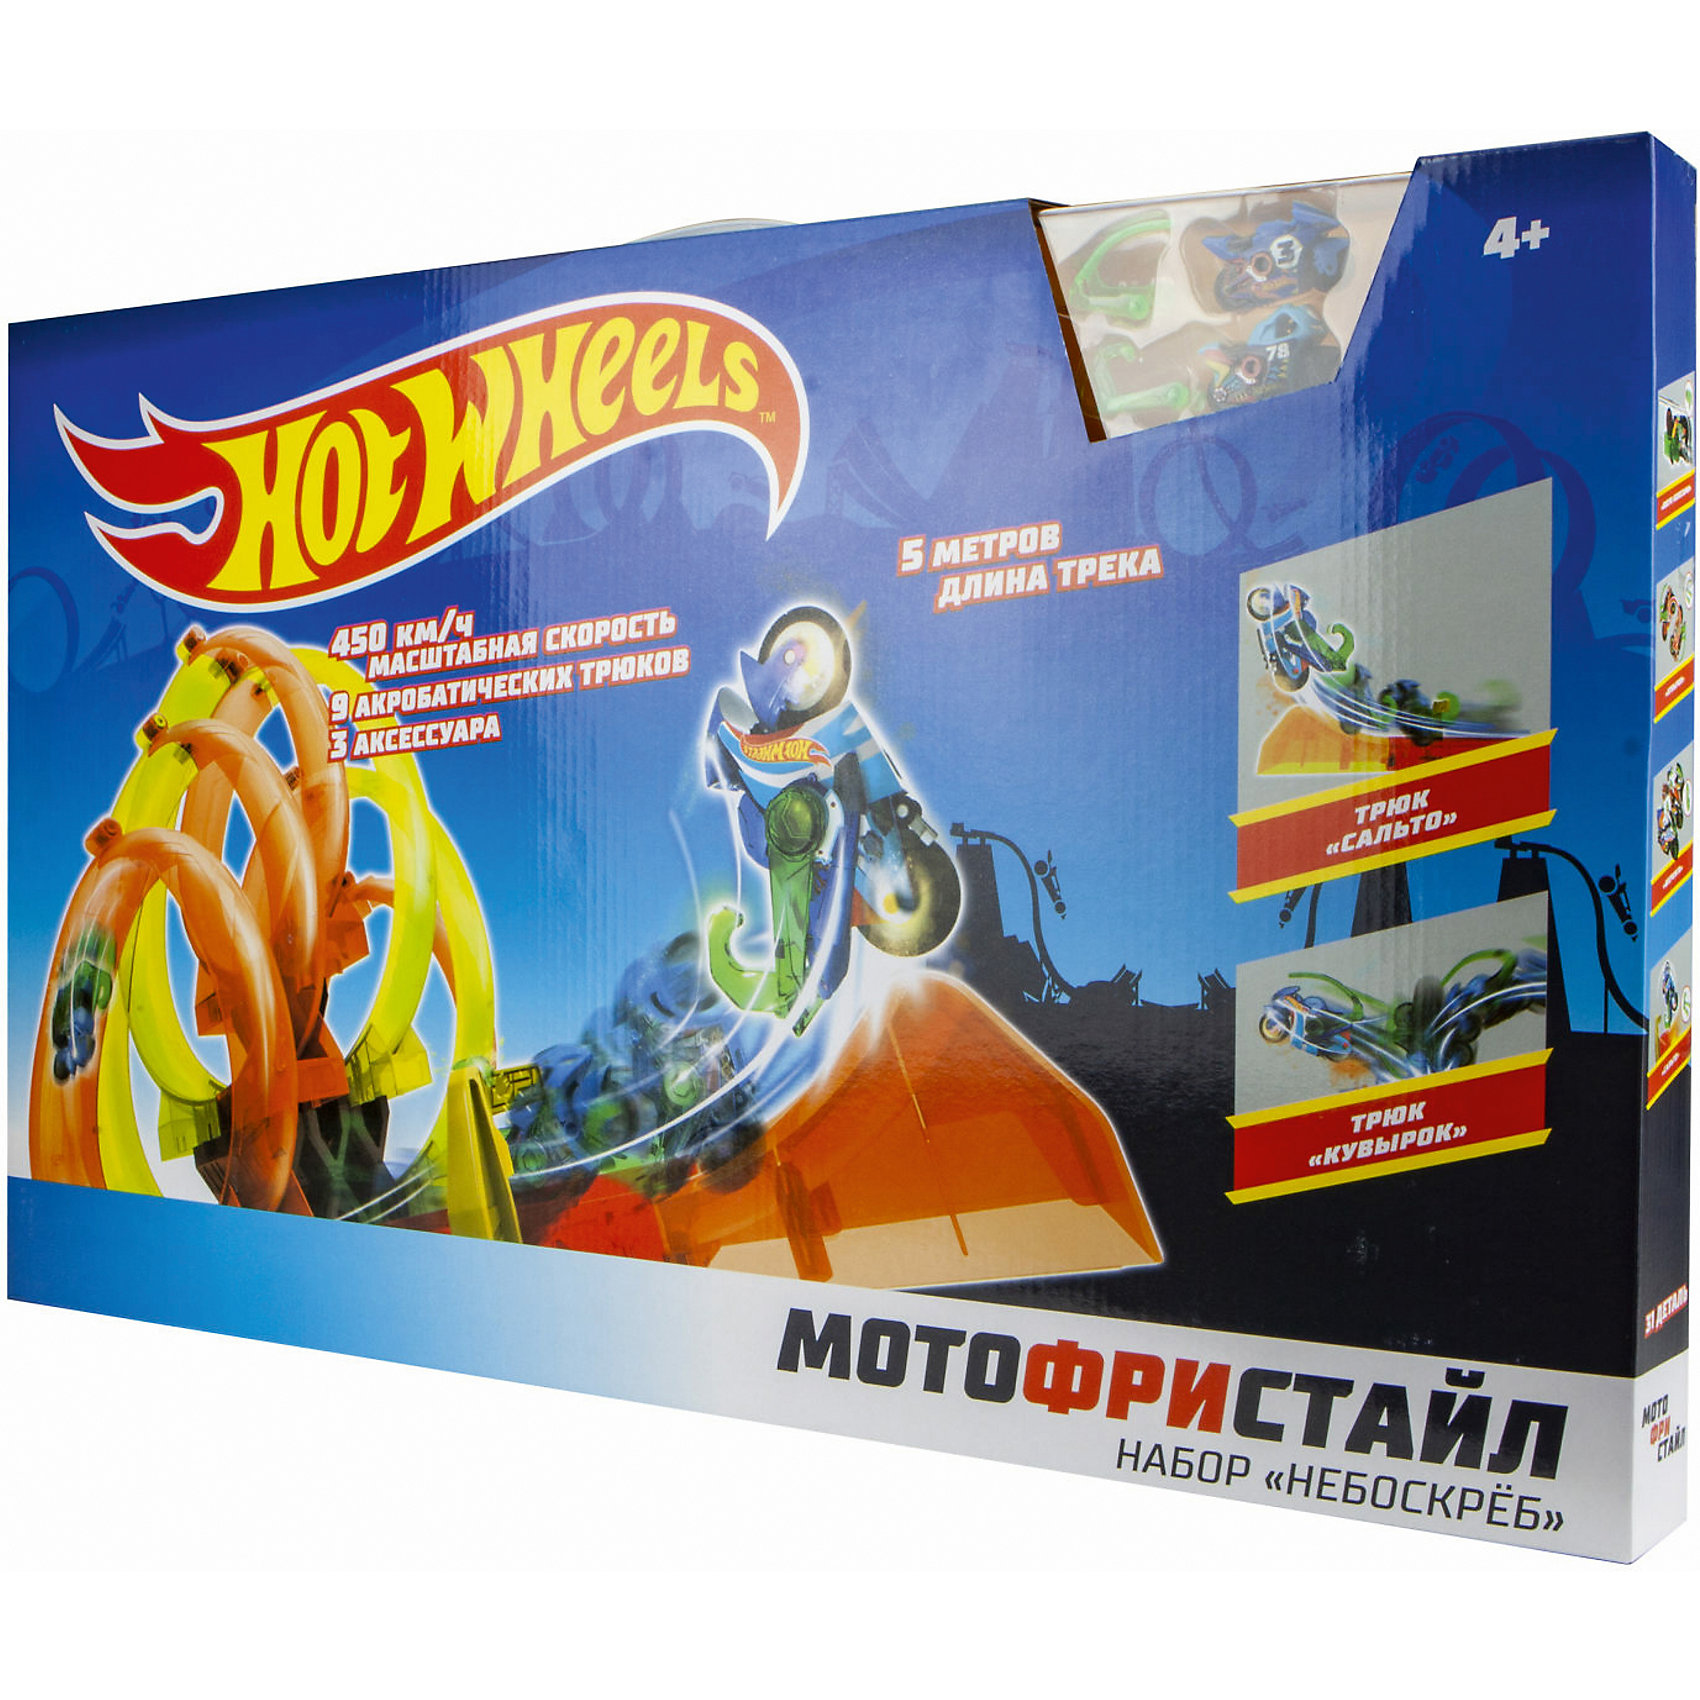 Игровой набор Hot Wheels "Мотофристайл", 25 деталей 1Toy 13623770